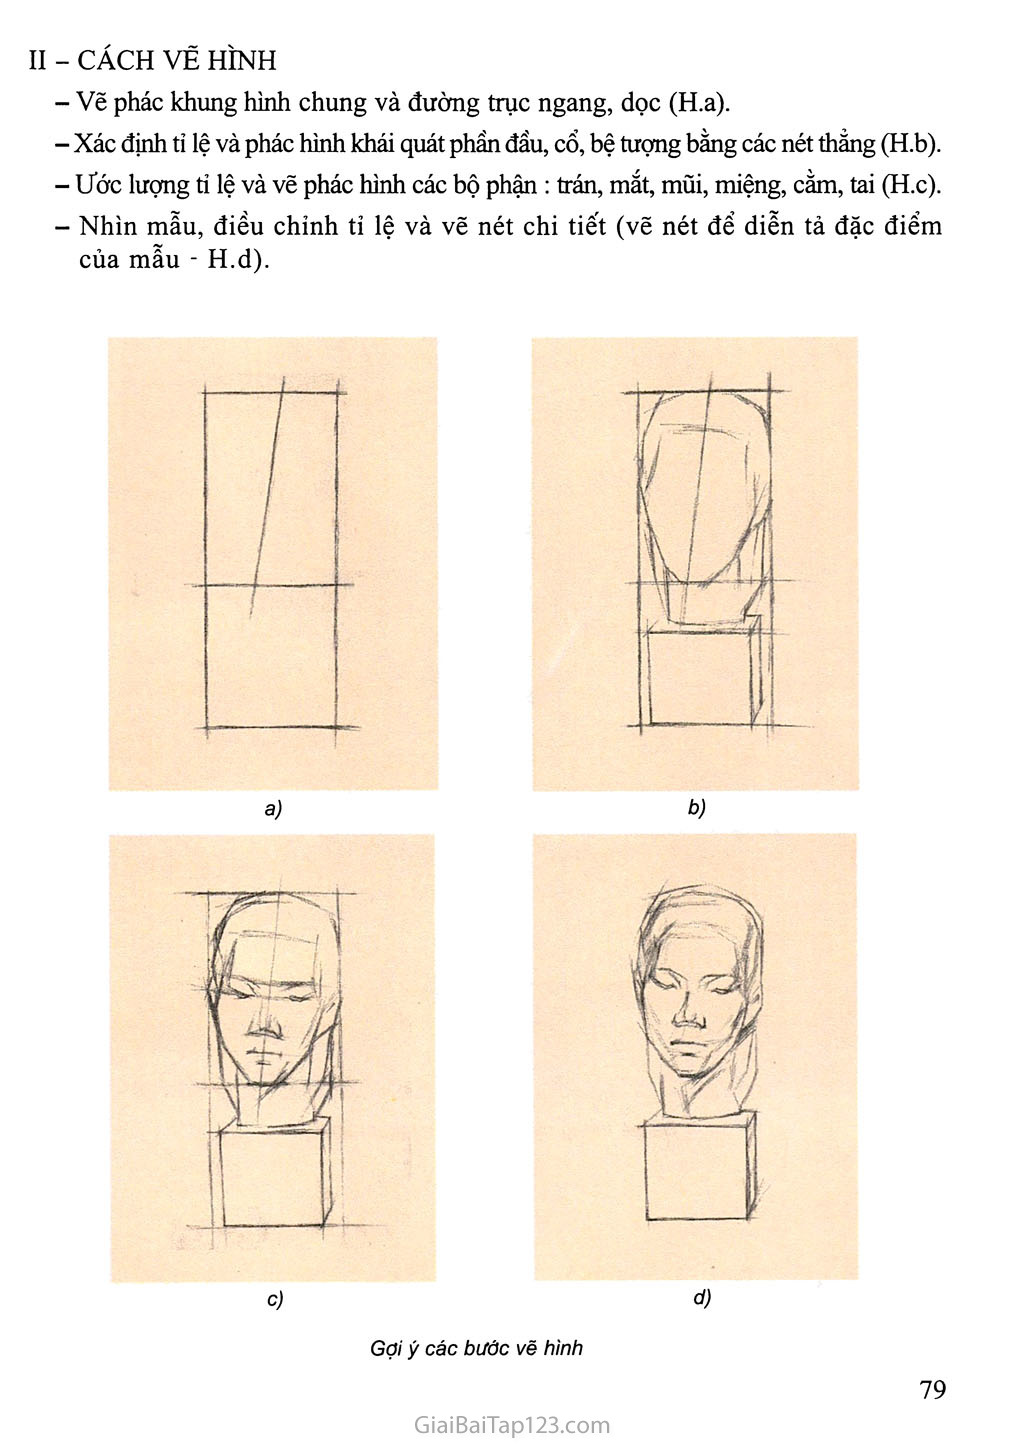 Bài 7. Vẽ theo mẫu Vẽ tượng chân dung (Tượng thạch cao - Vẽ hình) trang 2